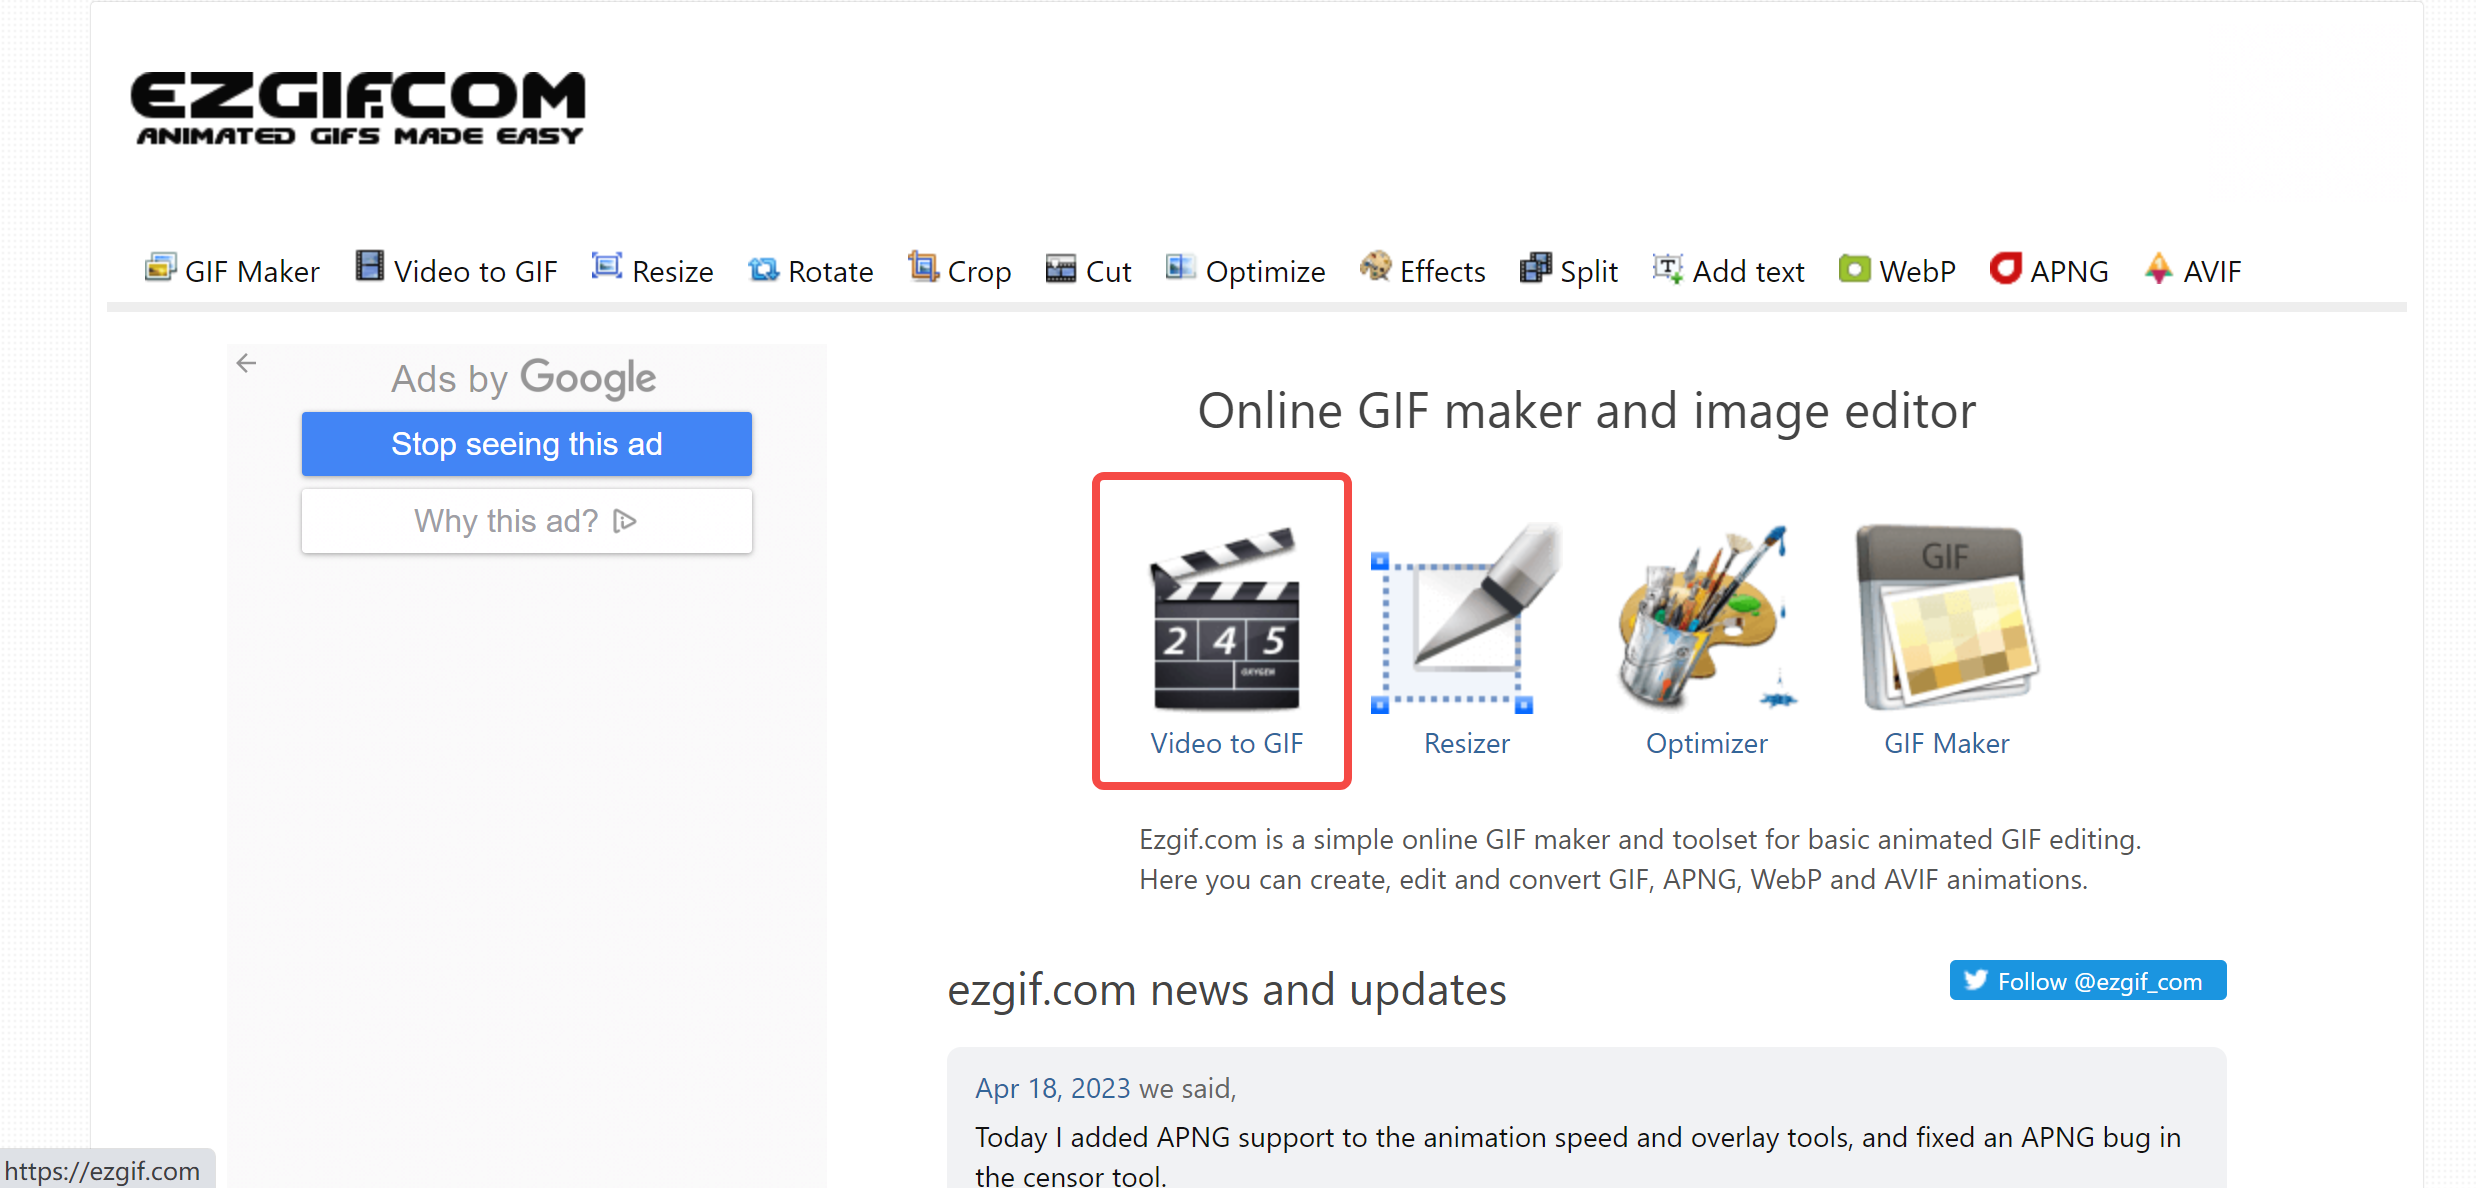 GIF Cutter - Cut, Trim, and Shorten GIFS Online